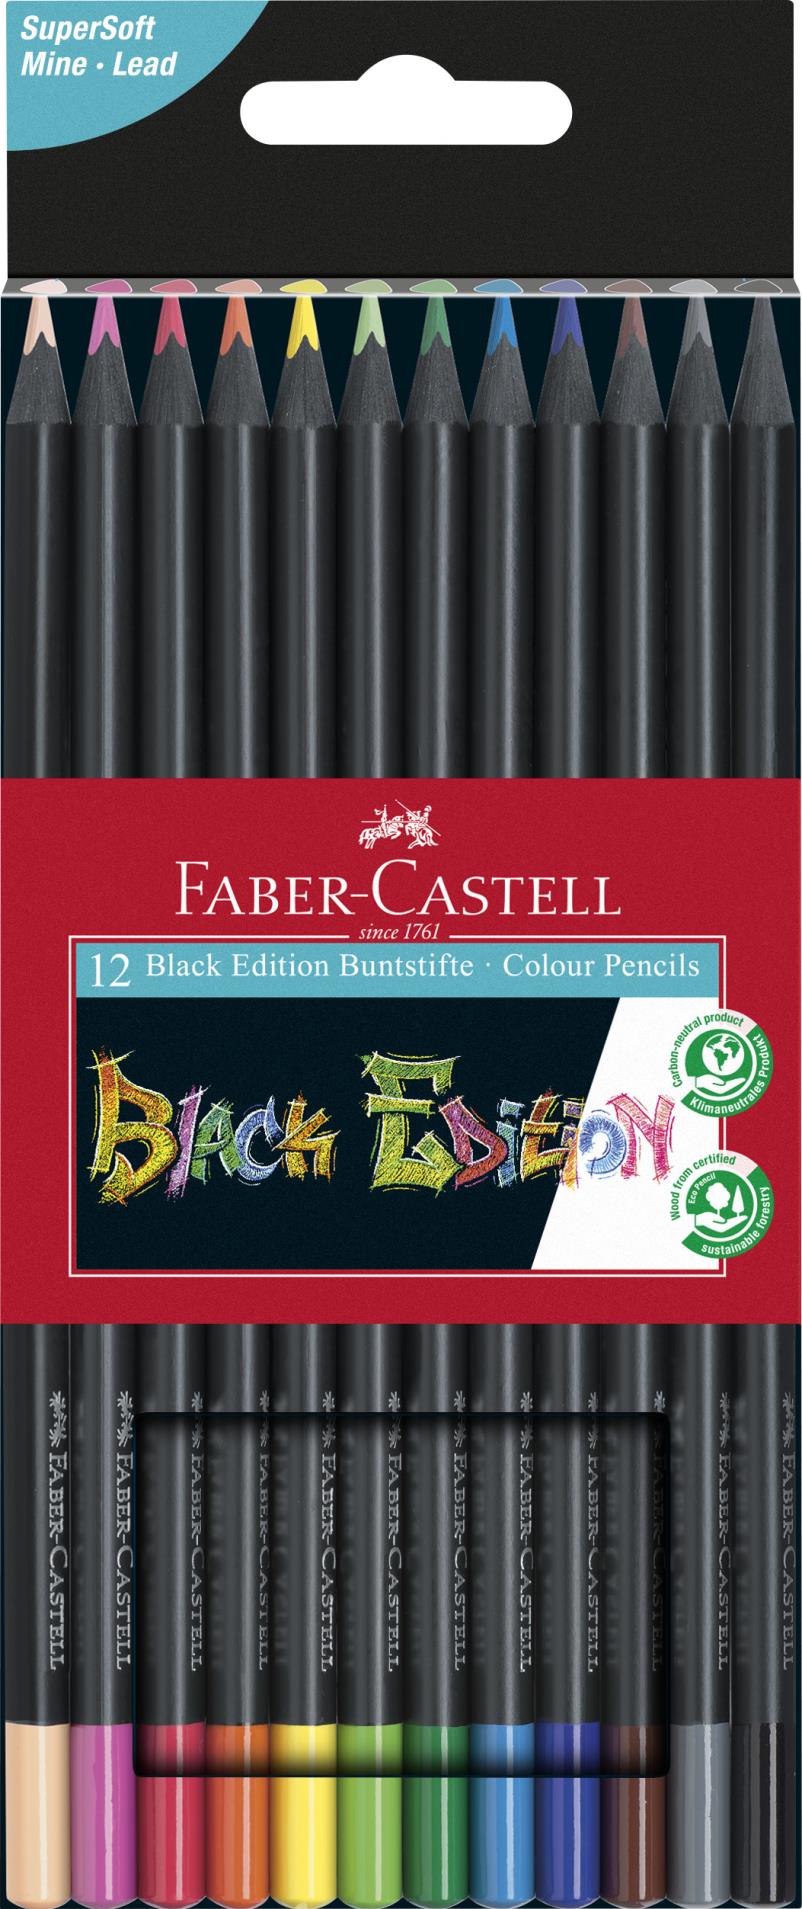 Pastelky Faber-Castell, Black Edition, sada 12 barev v papírové krabičce